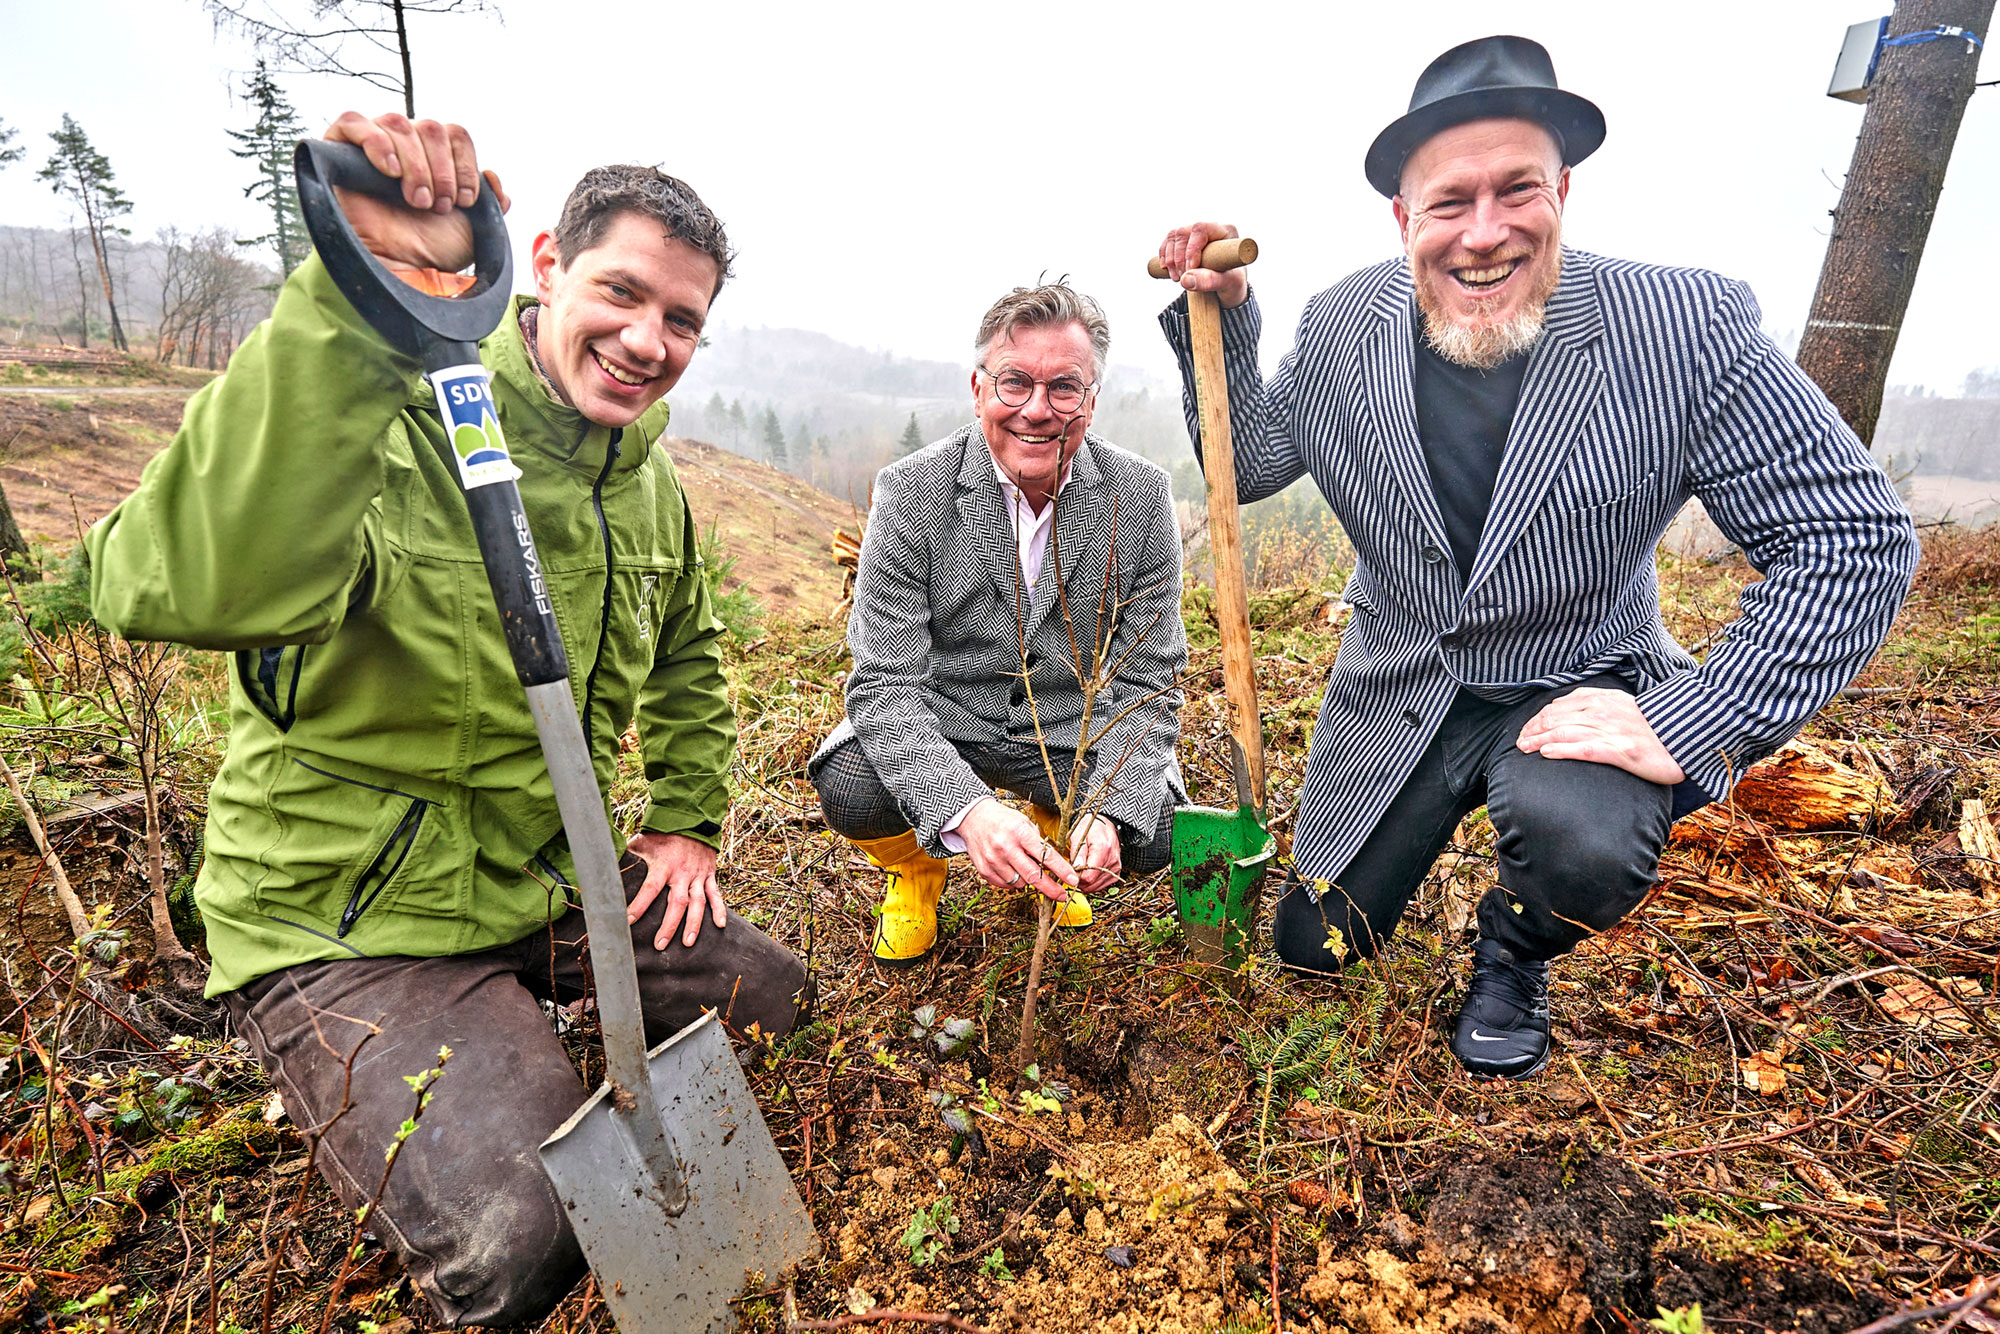 Nikolai Kalinke, Bernd Wieczorek und Christian Schröder pflanzten die ersten Setzlinge im Weiberner Wald. Foto: Sascha Ditscher/evm.